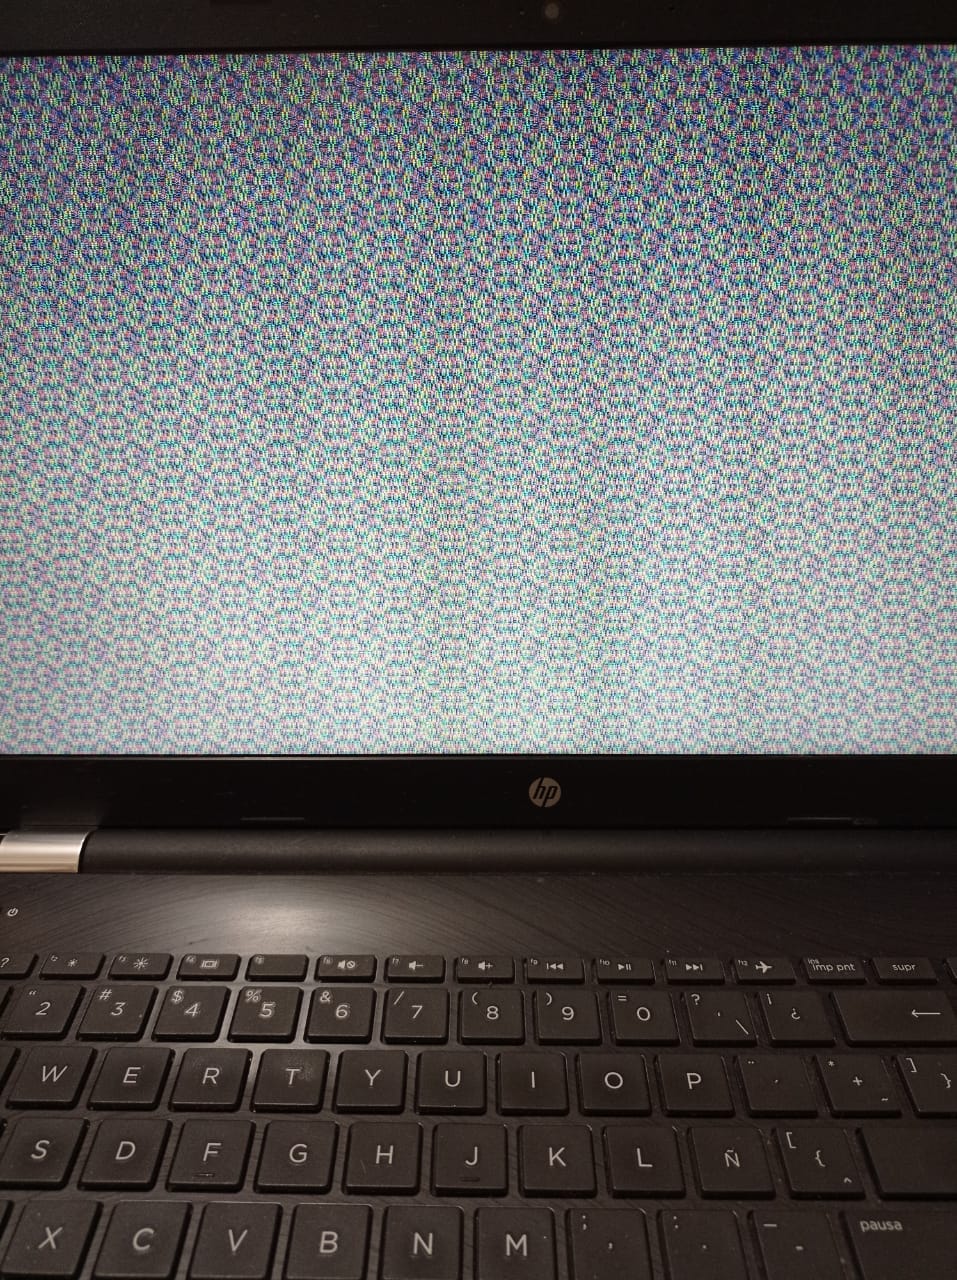 Pantalla de mi laptop se ve mal, como con líneas - Comunidad de Soporte HP  - 1120036